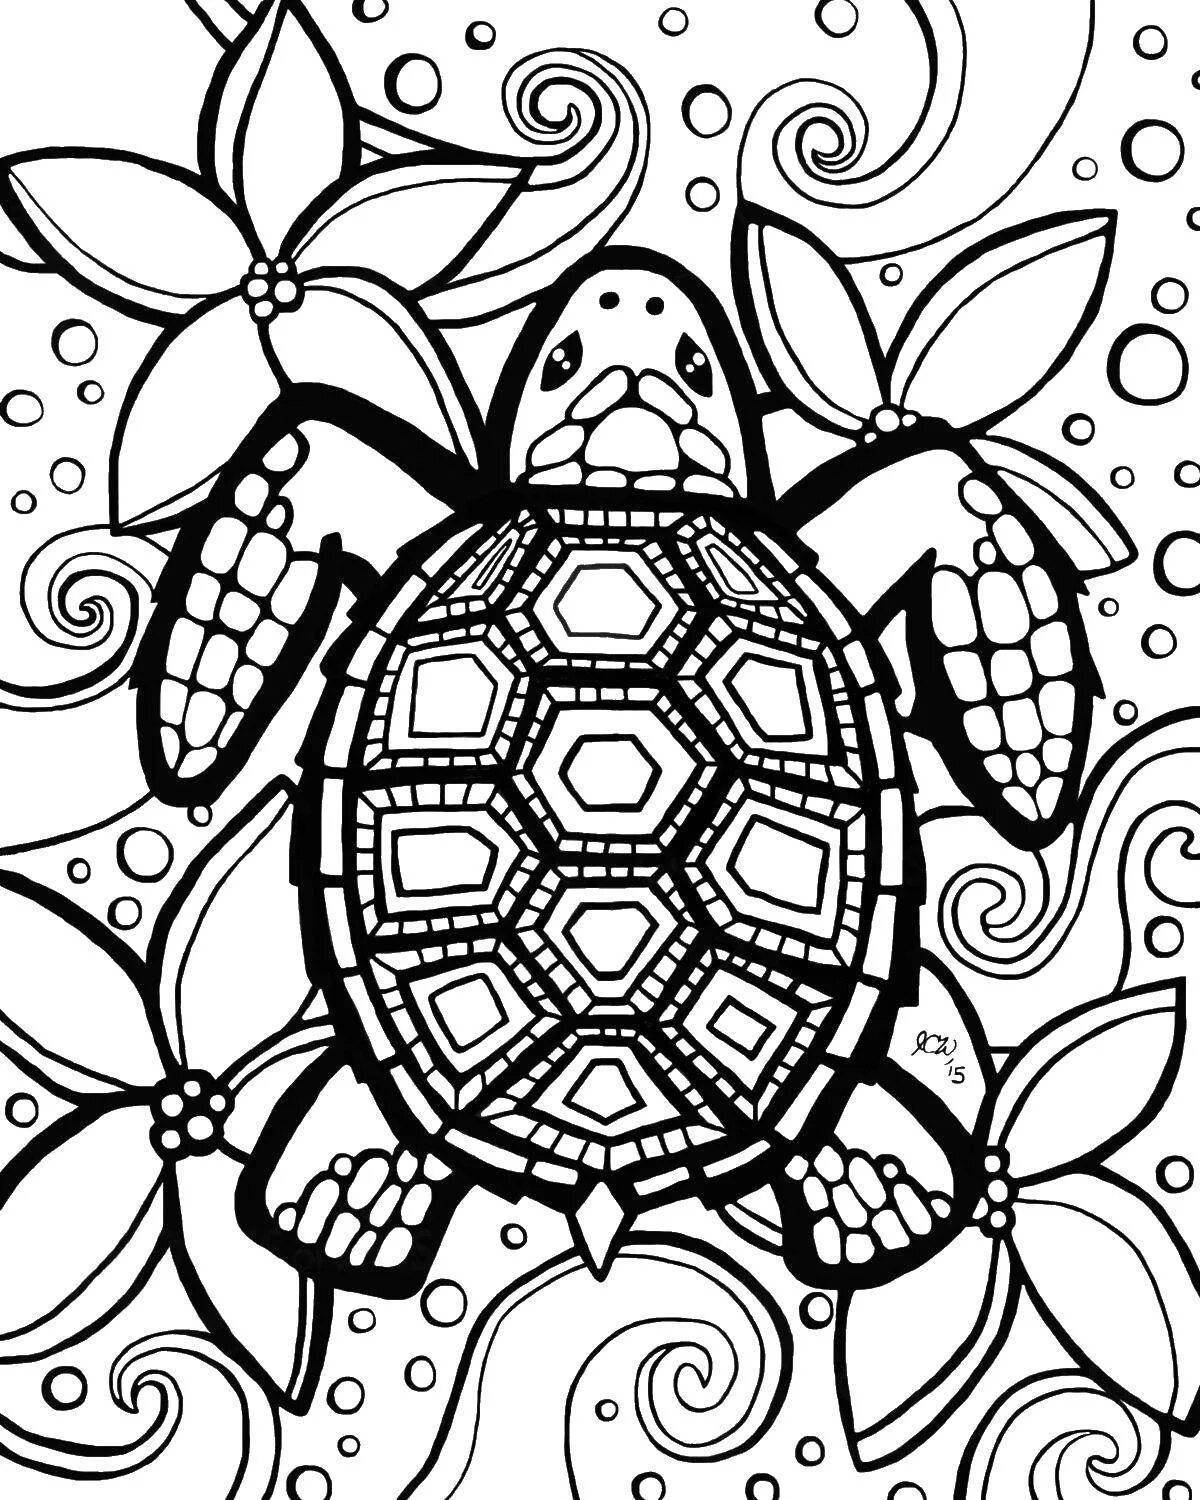 Invigorating anti-stress turtle coloring book